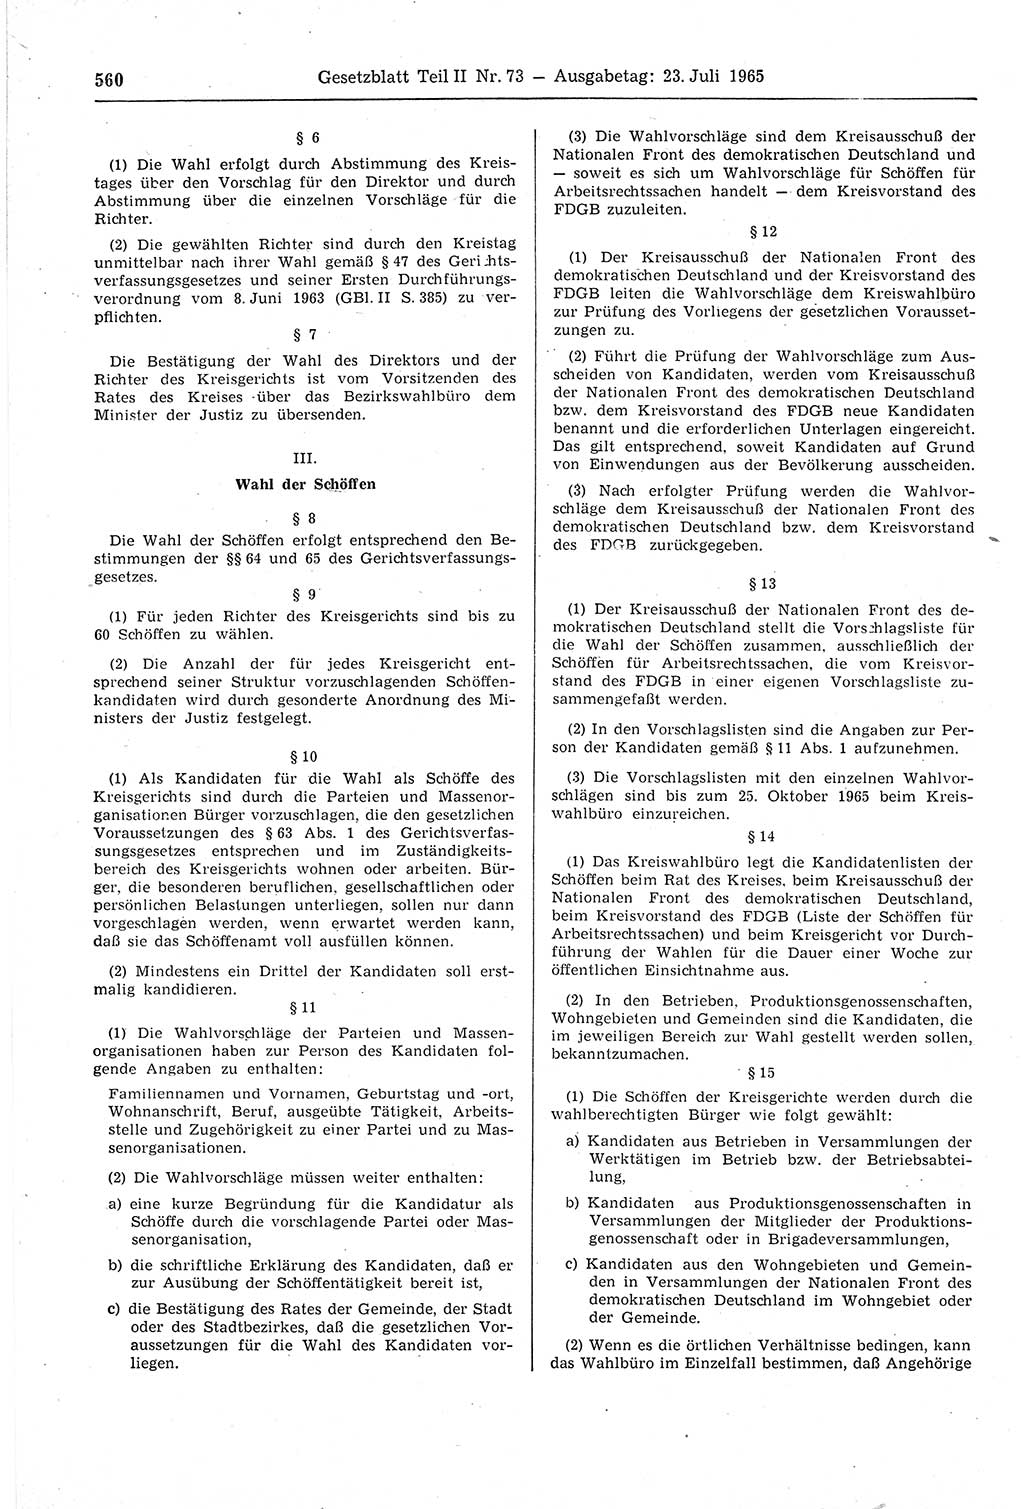 Gesetzblatt (GBl.) der Deutschen Demokratischen Republik (DDR) Teil ⅠⅠ 1965, Seite 560 (GBl. DDR ⅠⅠ 1965, S. 560)